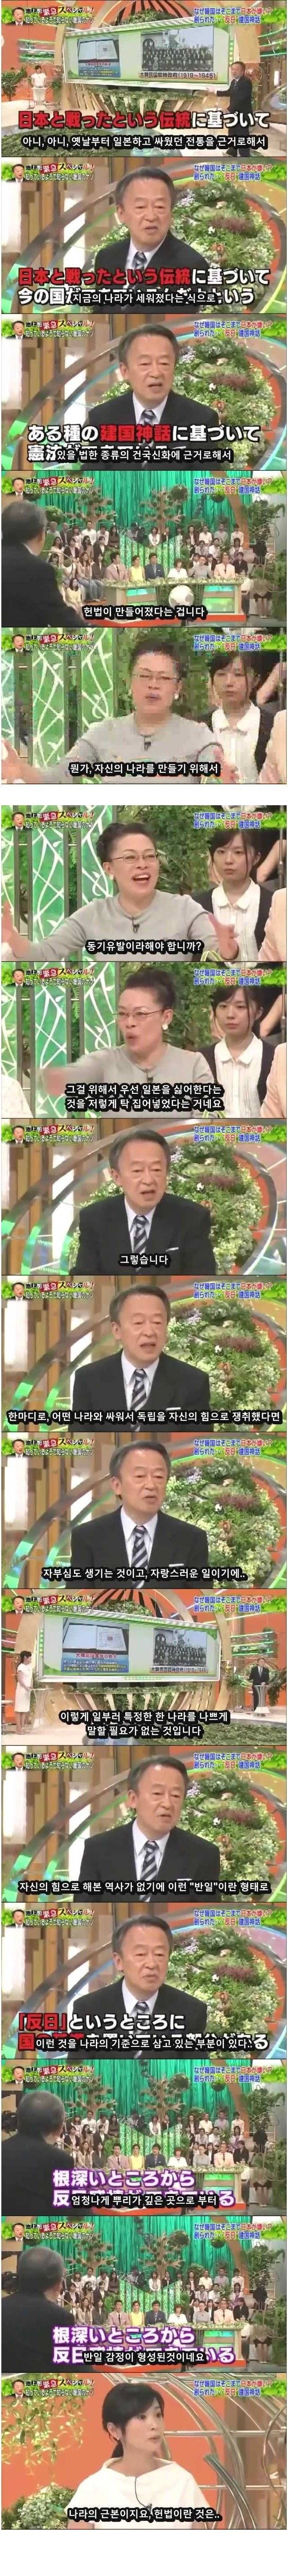 일본 지식인이 이야기하는 한국의 반일감정.jpg | 인스티즈